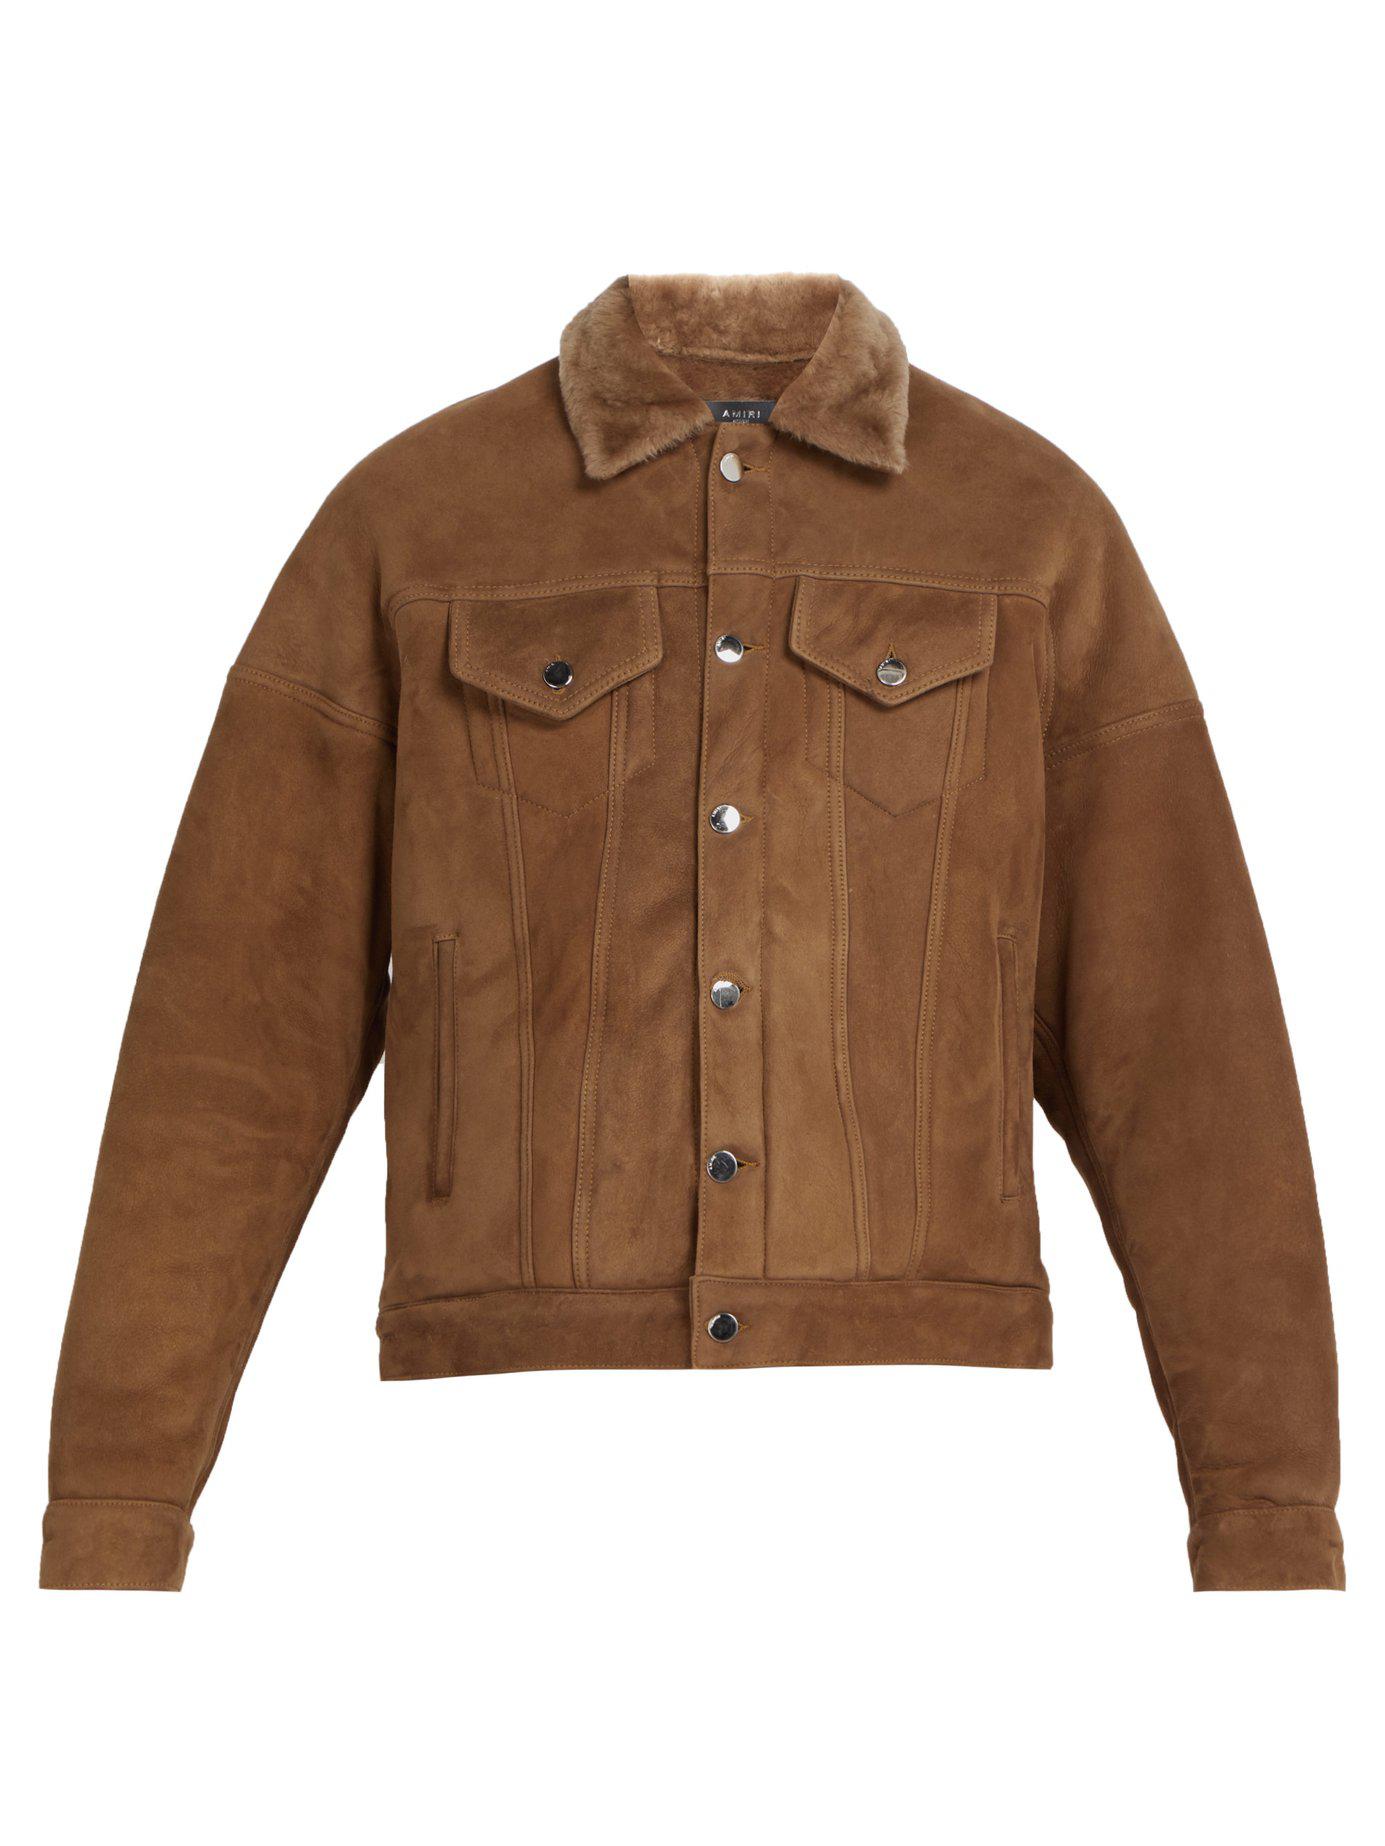 Amiri Oversized Shearling Trucker Jacket in Brown for Men - Lyst